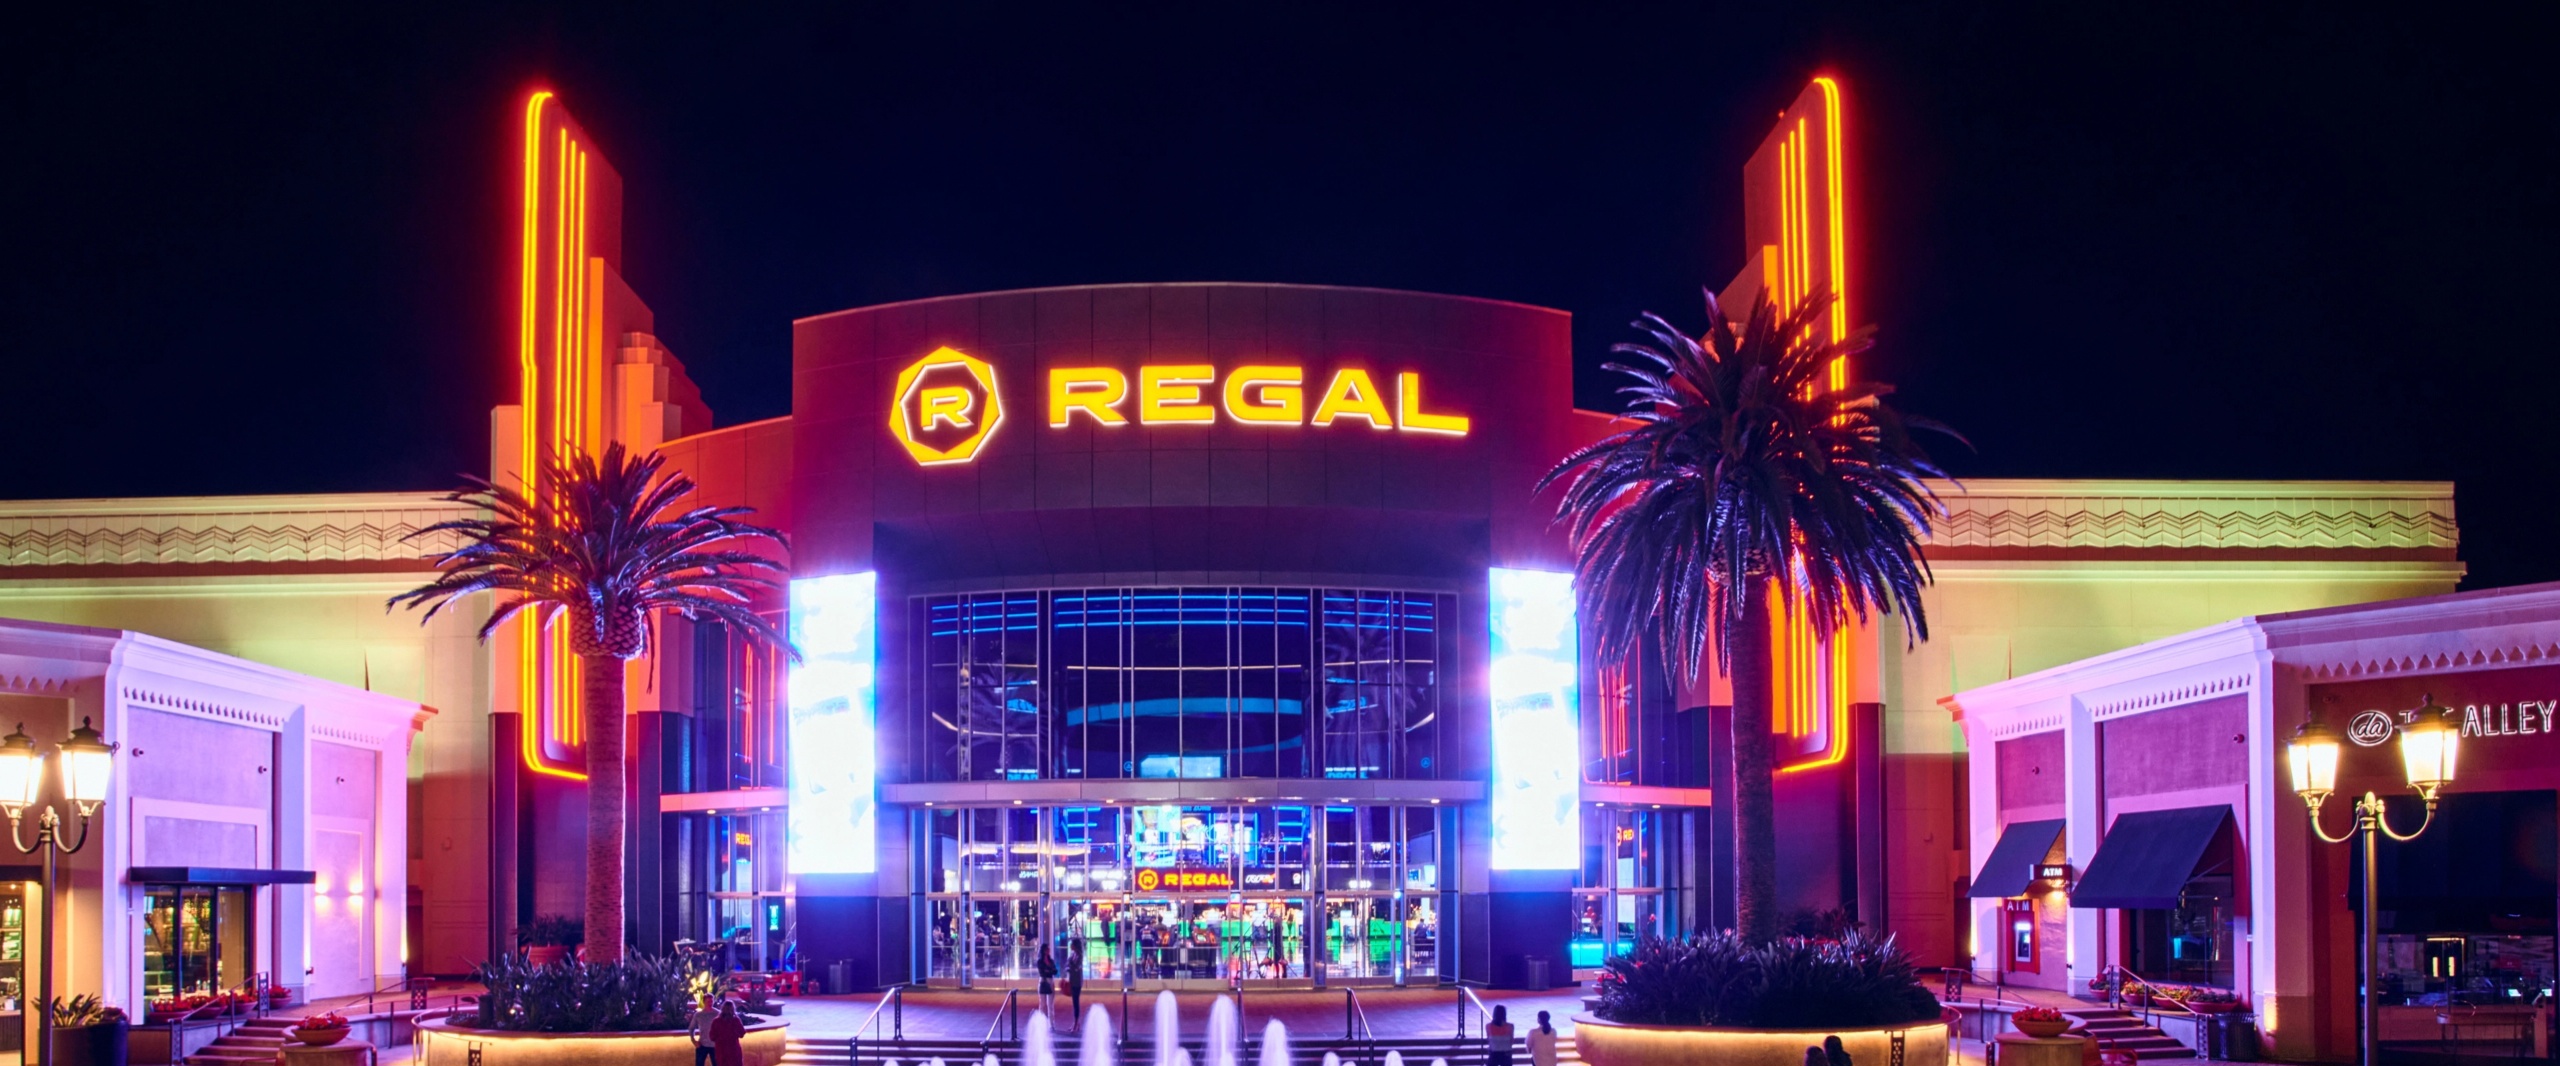 Regal movie theater at Irvine Spectrum Center